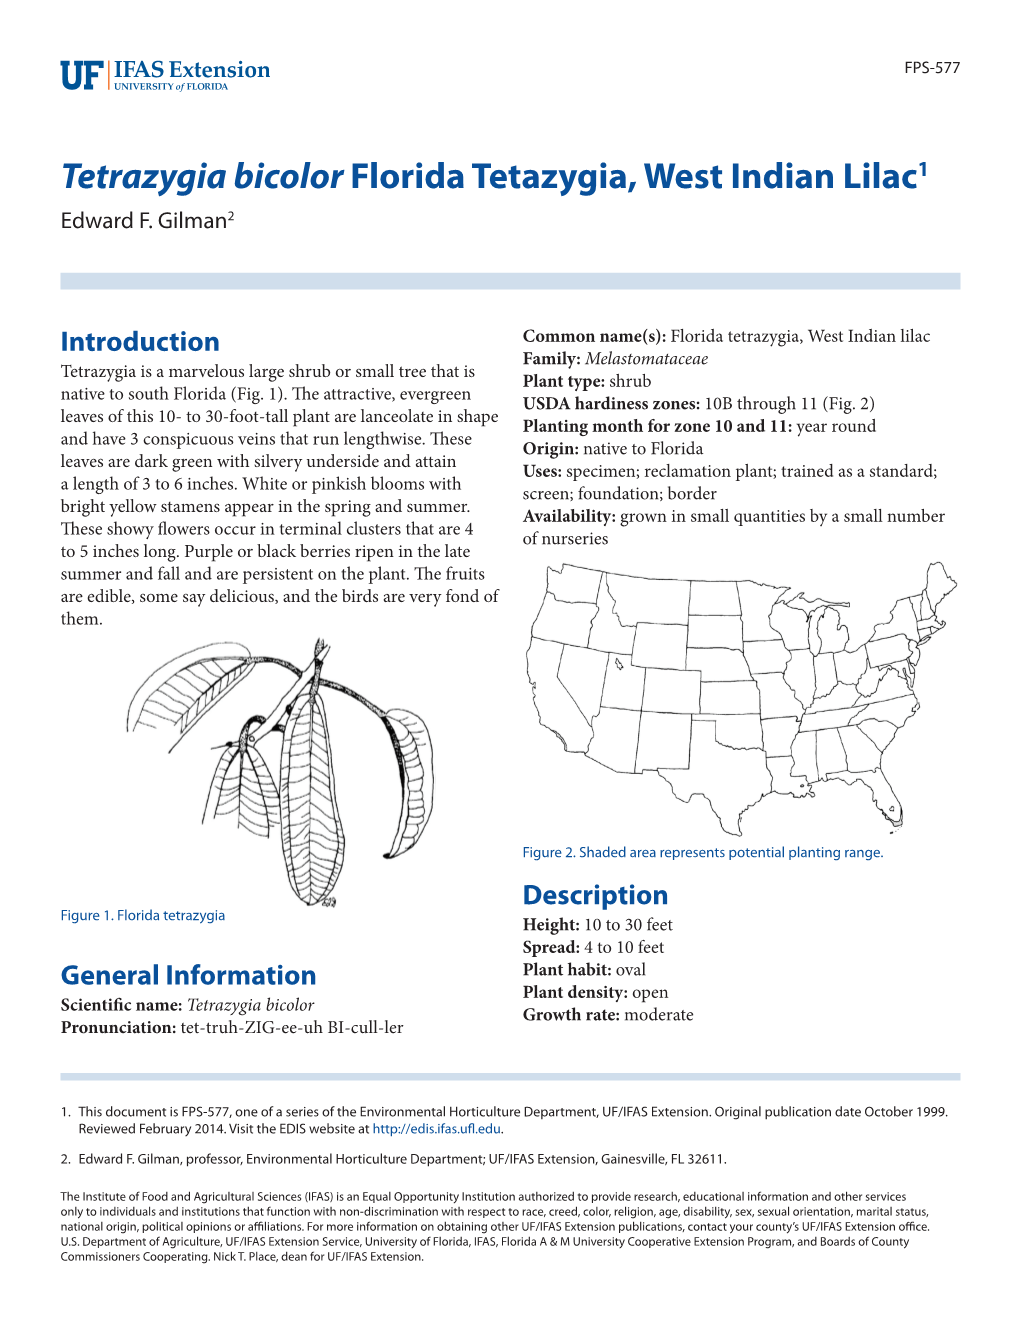 Tetrazygia Bicolor Florida Tetazygia, West Indian Lilac1 Edward F